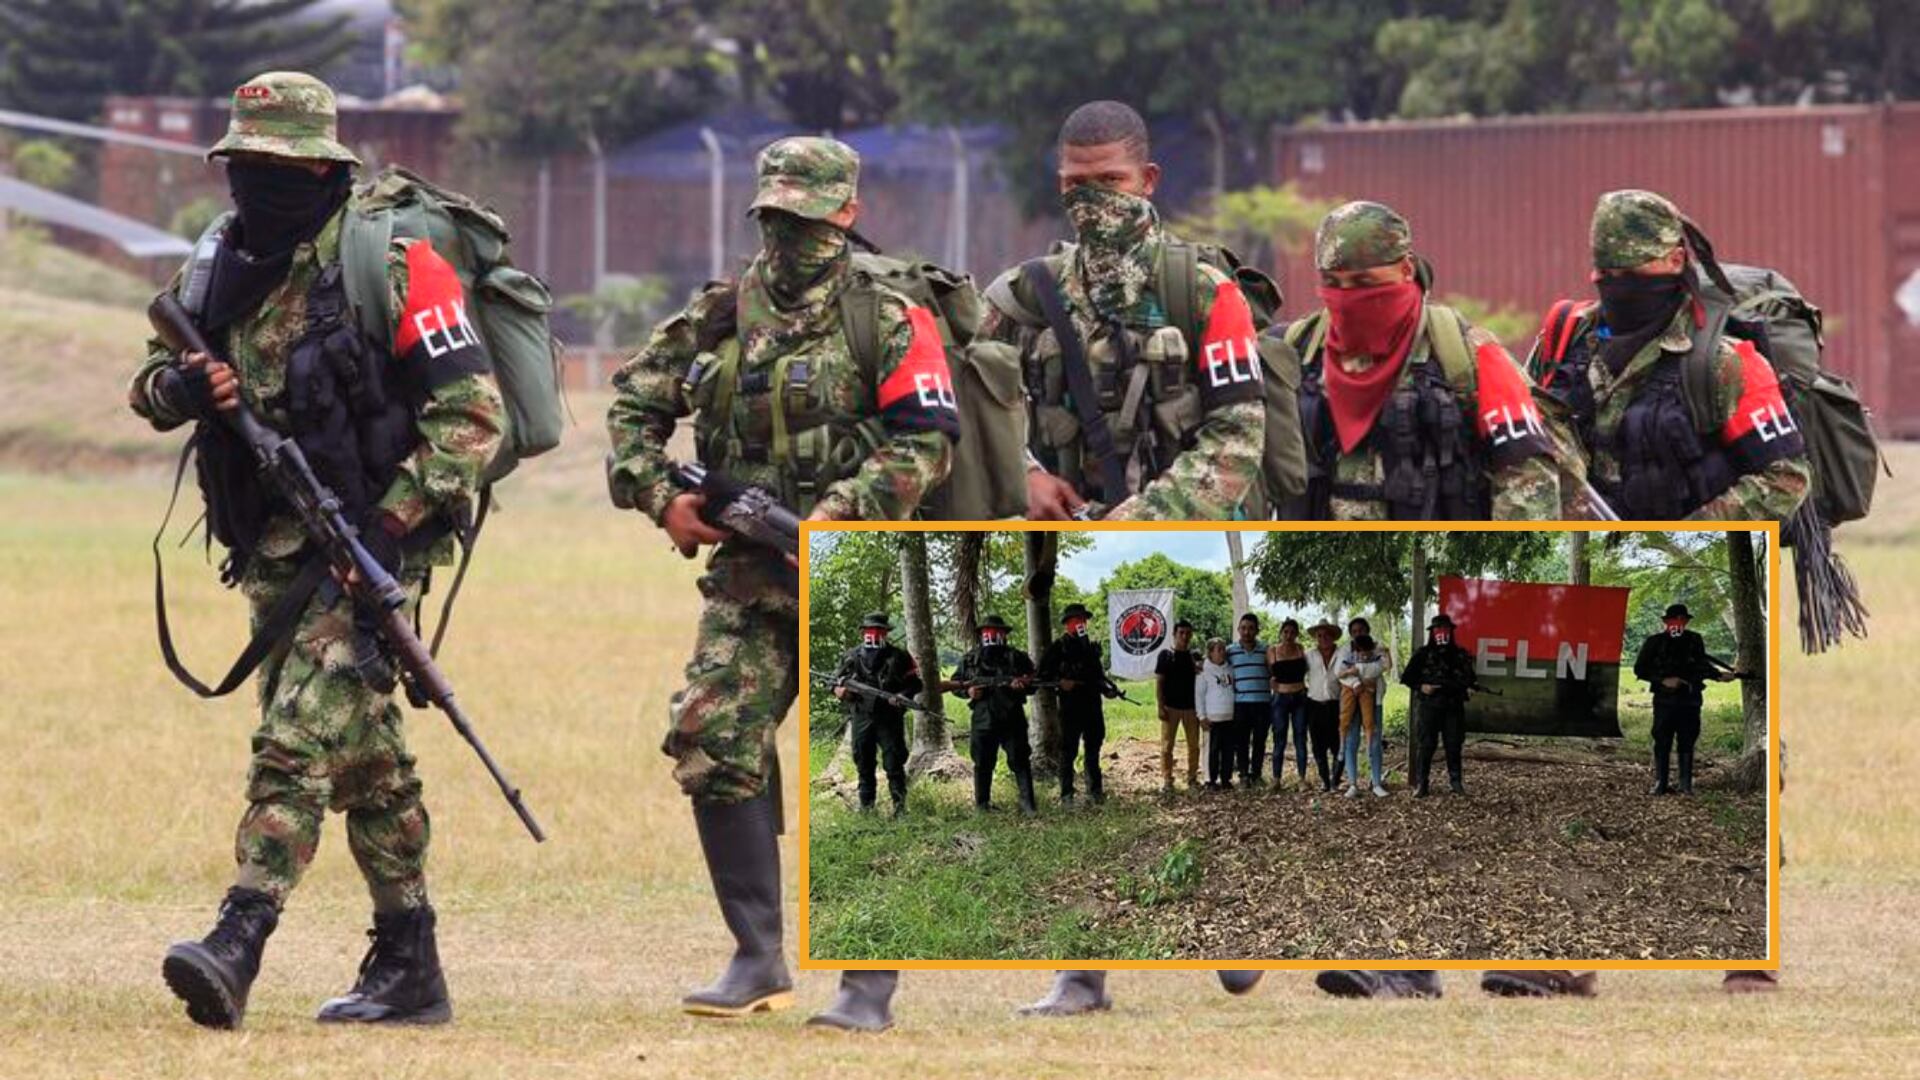 ELN anunció la liberación de tres personas en Arauca - crédito Jaime Saldarriaga/ REUTERS - Redes sociales